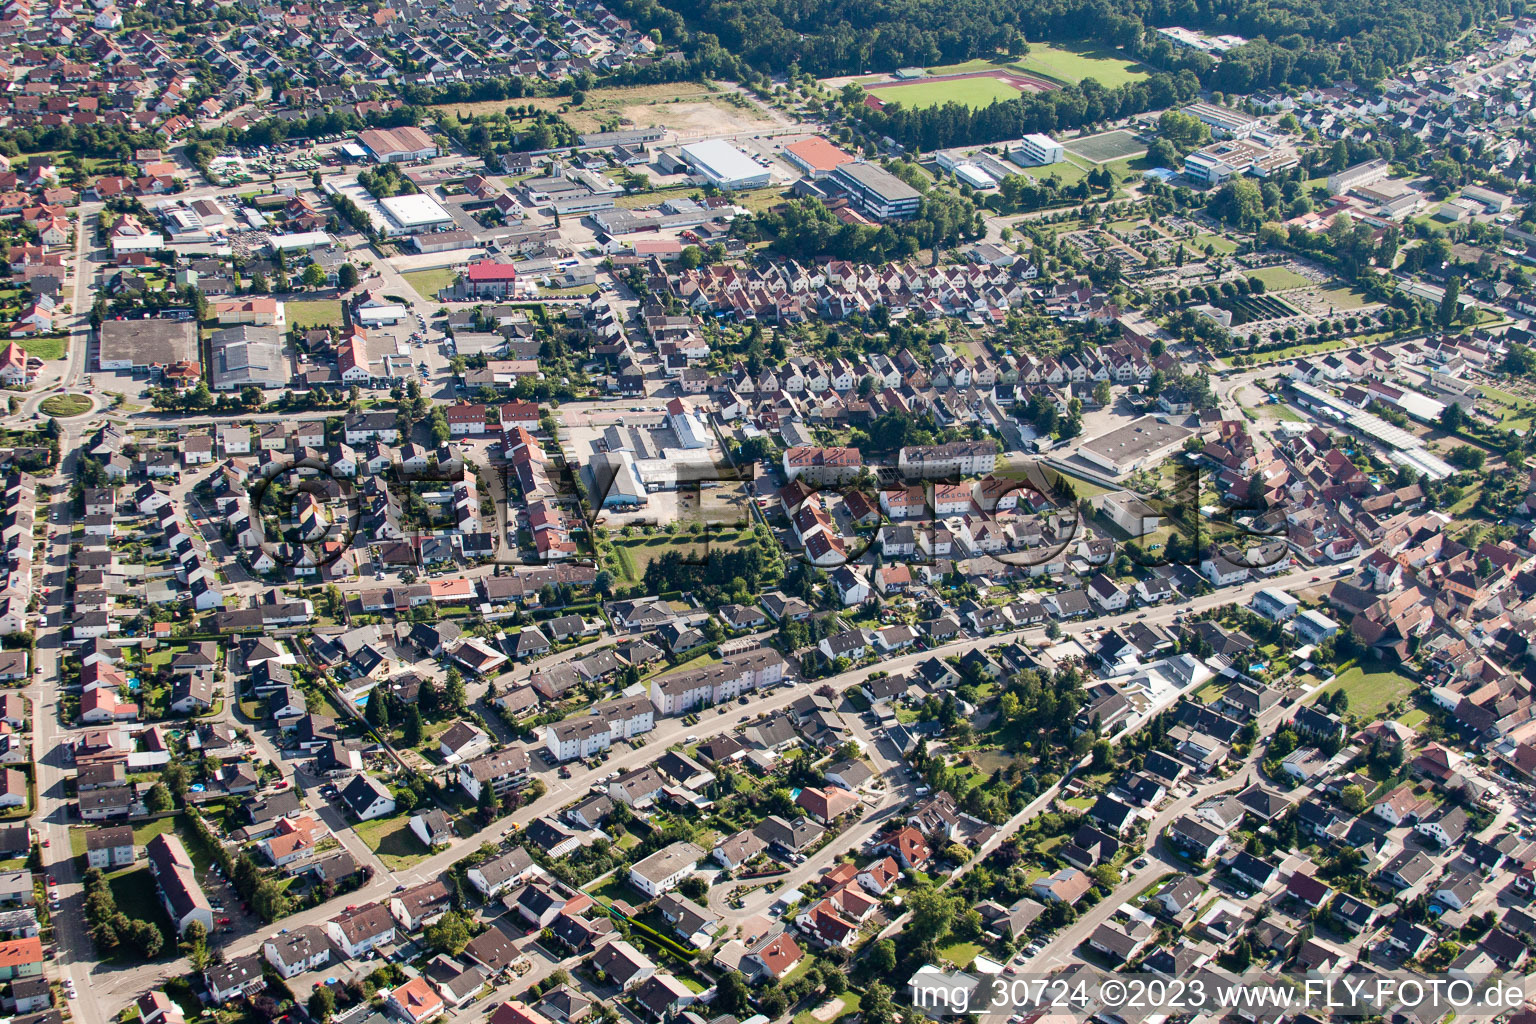 Rülzheim im Bundesland Rheinland-Pfalz, Deutschland aus der Luft betrachtet